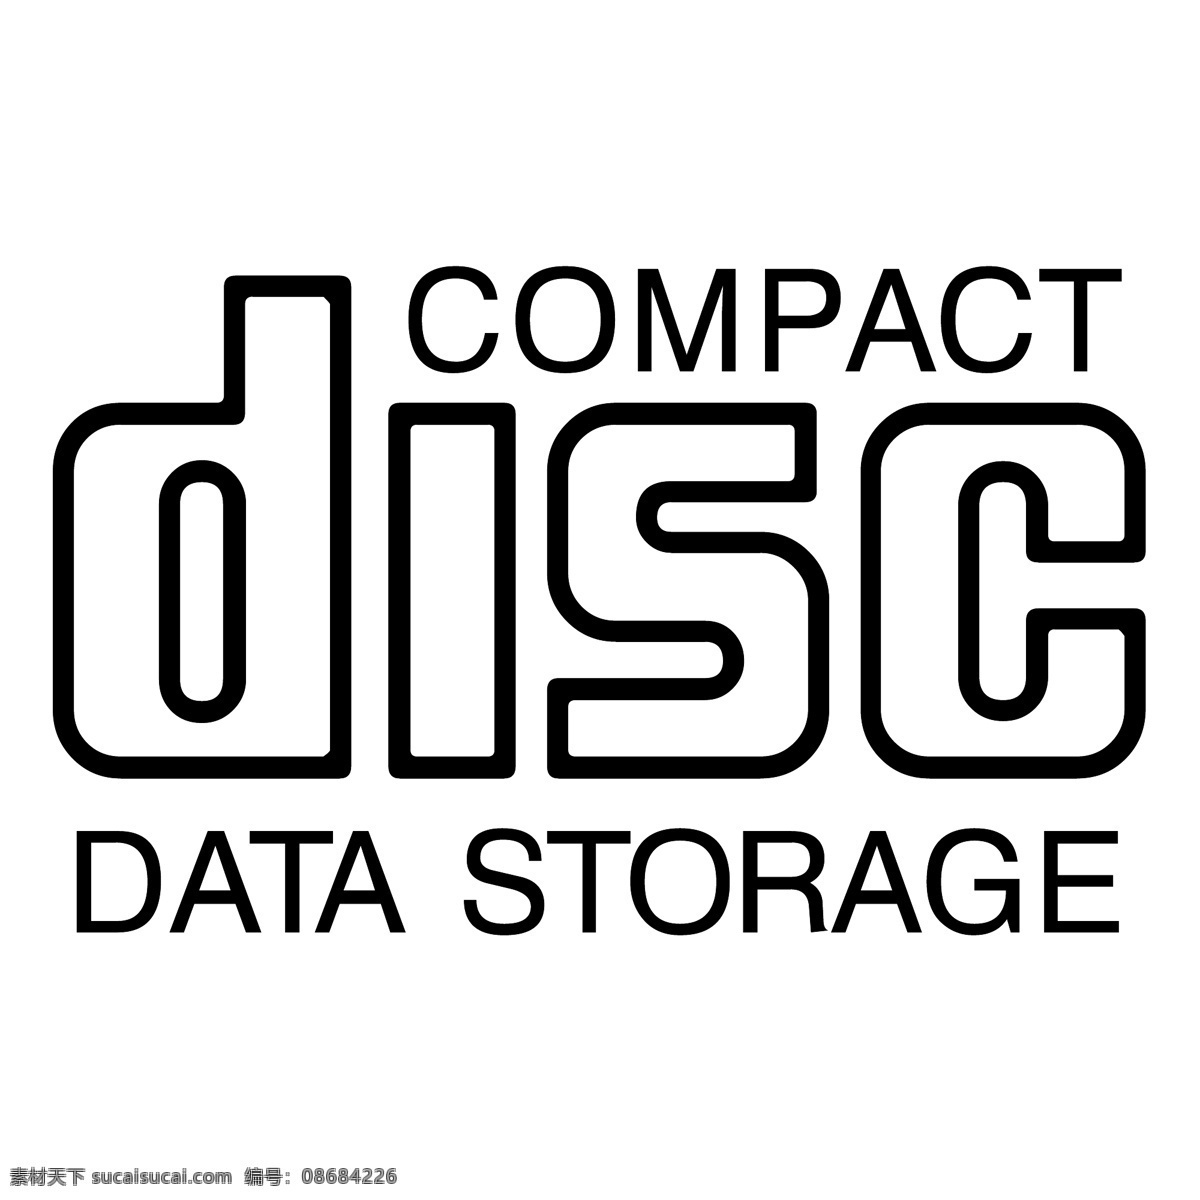 光盘 数据存储 数据 存储 标志 矢量 数据存储图像 免费 载体 图像 数据存储载体 数据存储盘 向量 矢量图 建筑家居